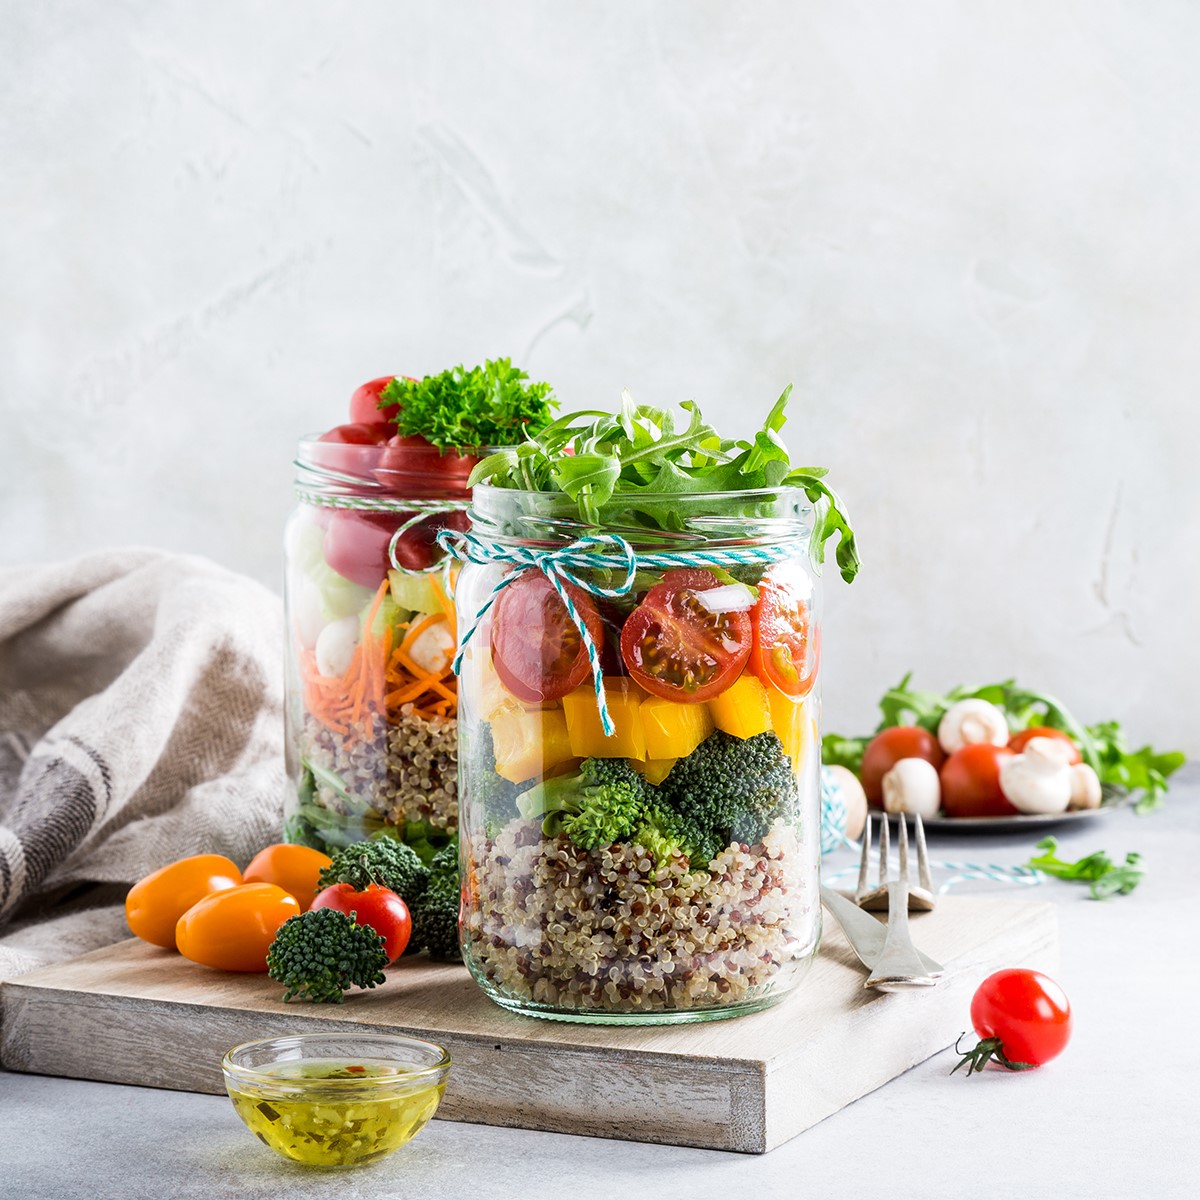 Cuisine facile sur Pinterest: salade de quinoa dans un bocal.